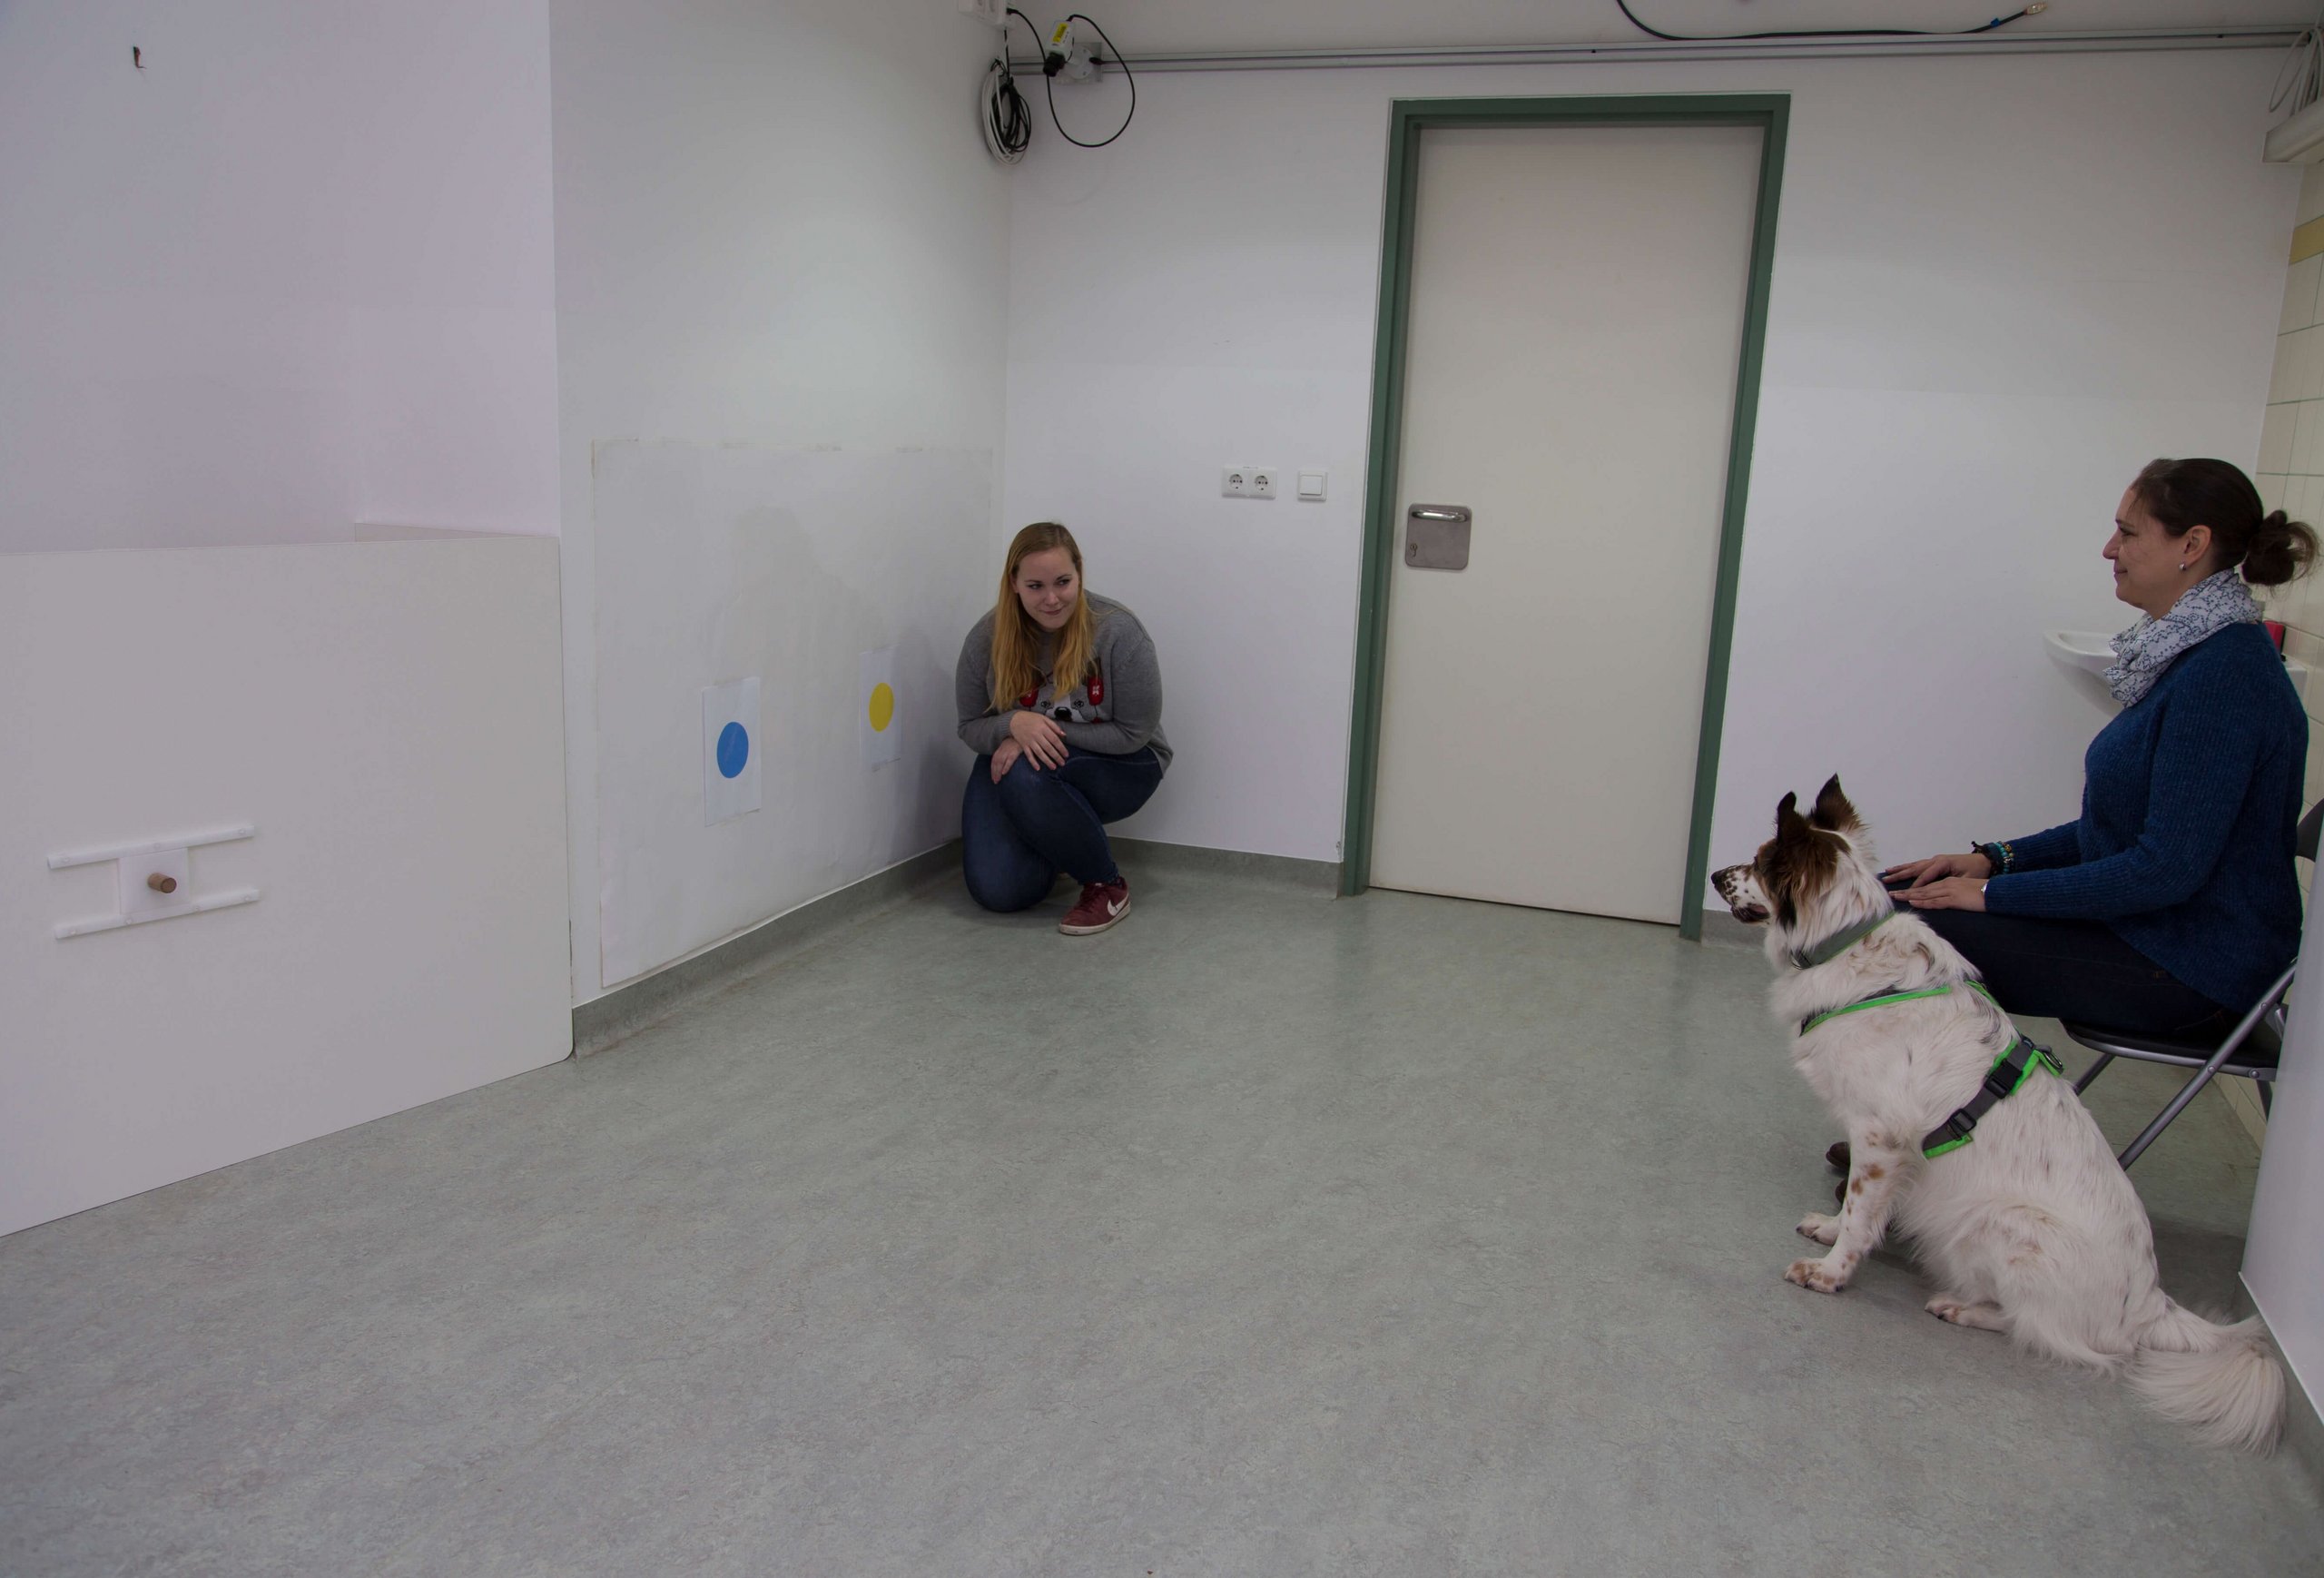 Ein Hund sitzt neben der Hundehalterin in einem Testraum und beobachtet die Experimentatorin, die in einer Ecke des Raumes vor einer Wand mit zwei Punkten am Boden hockt.